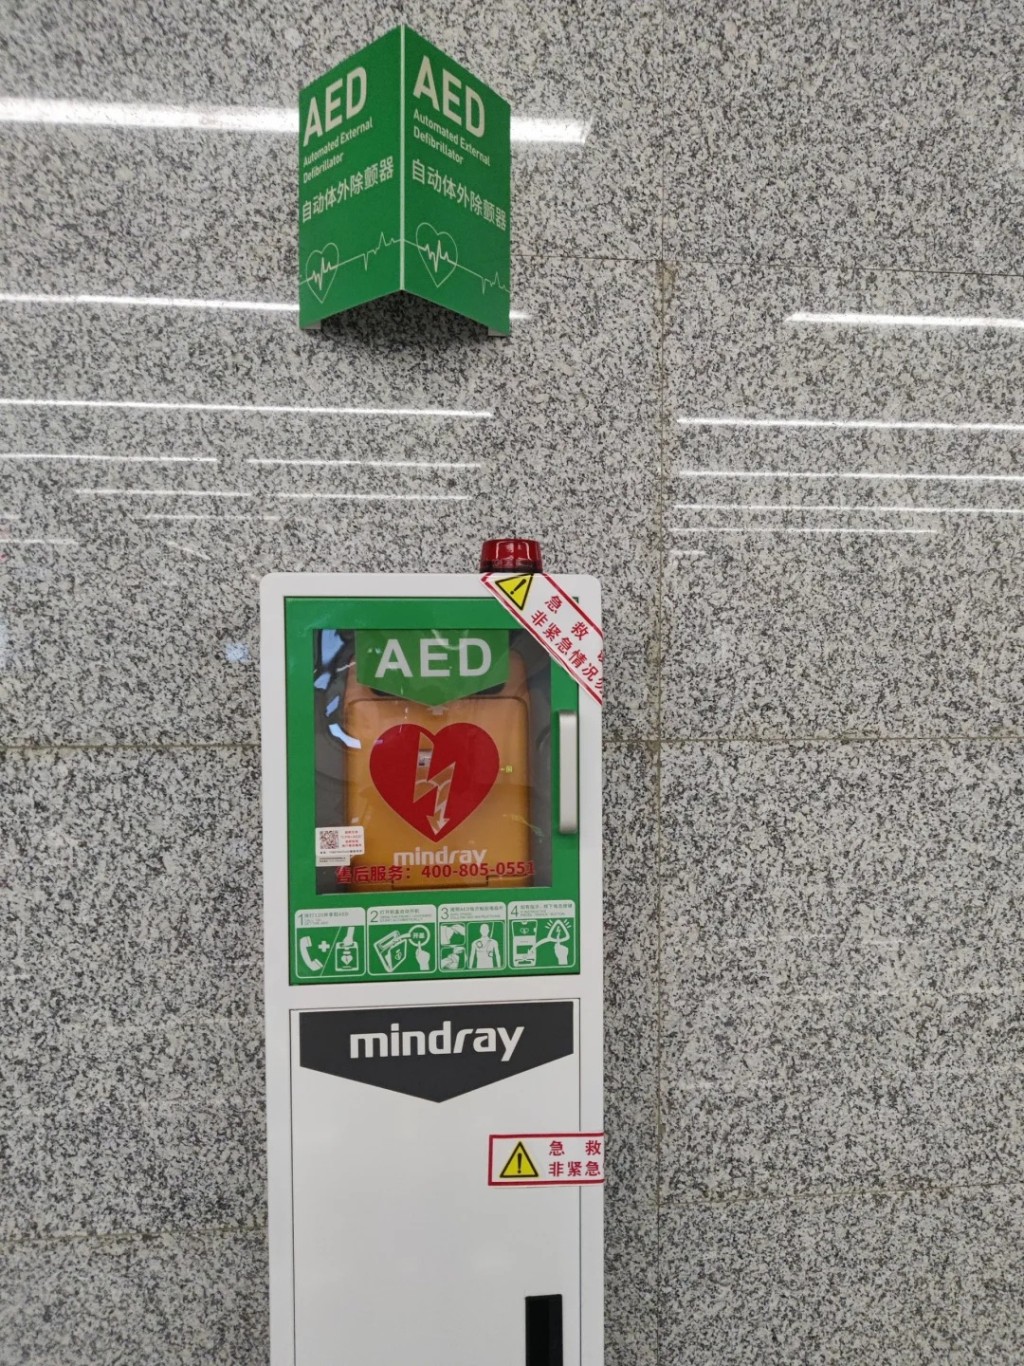 內地許多公眾地方也配備了AED設備。小紅書